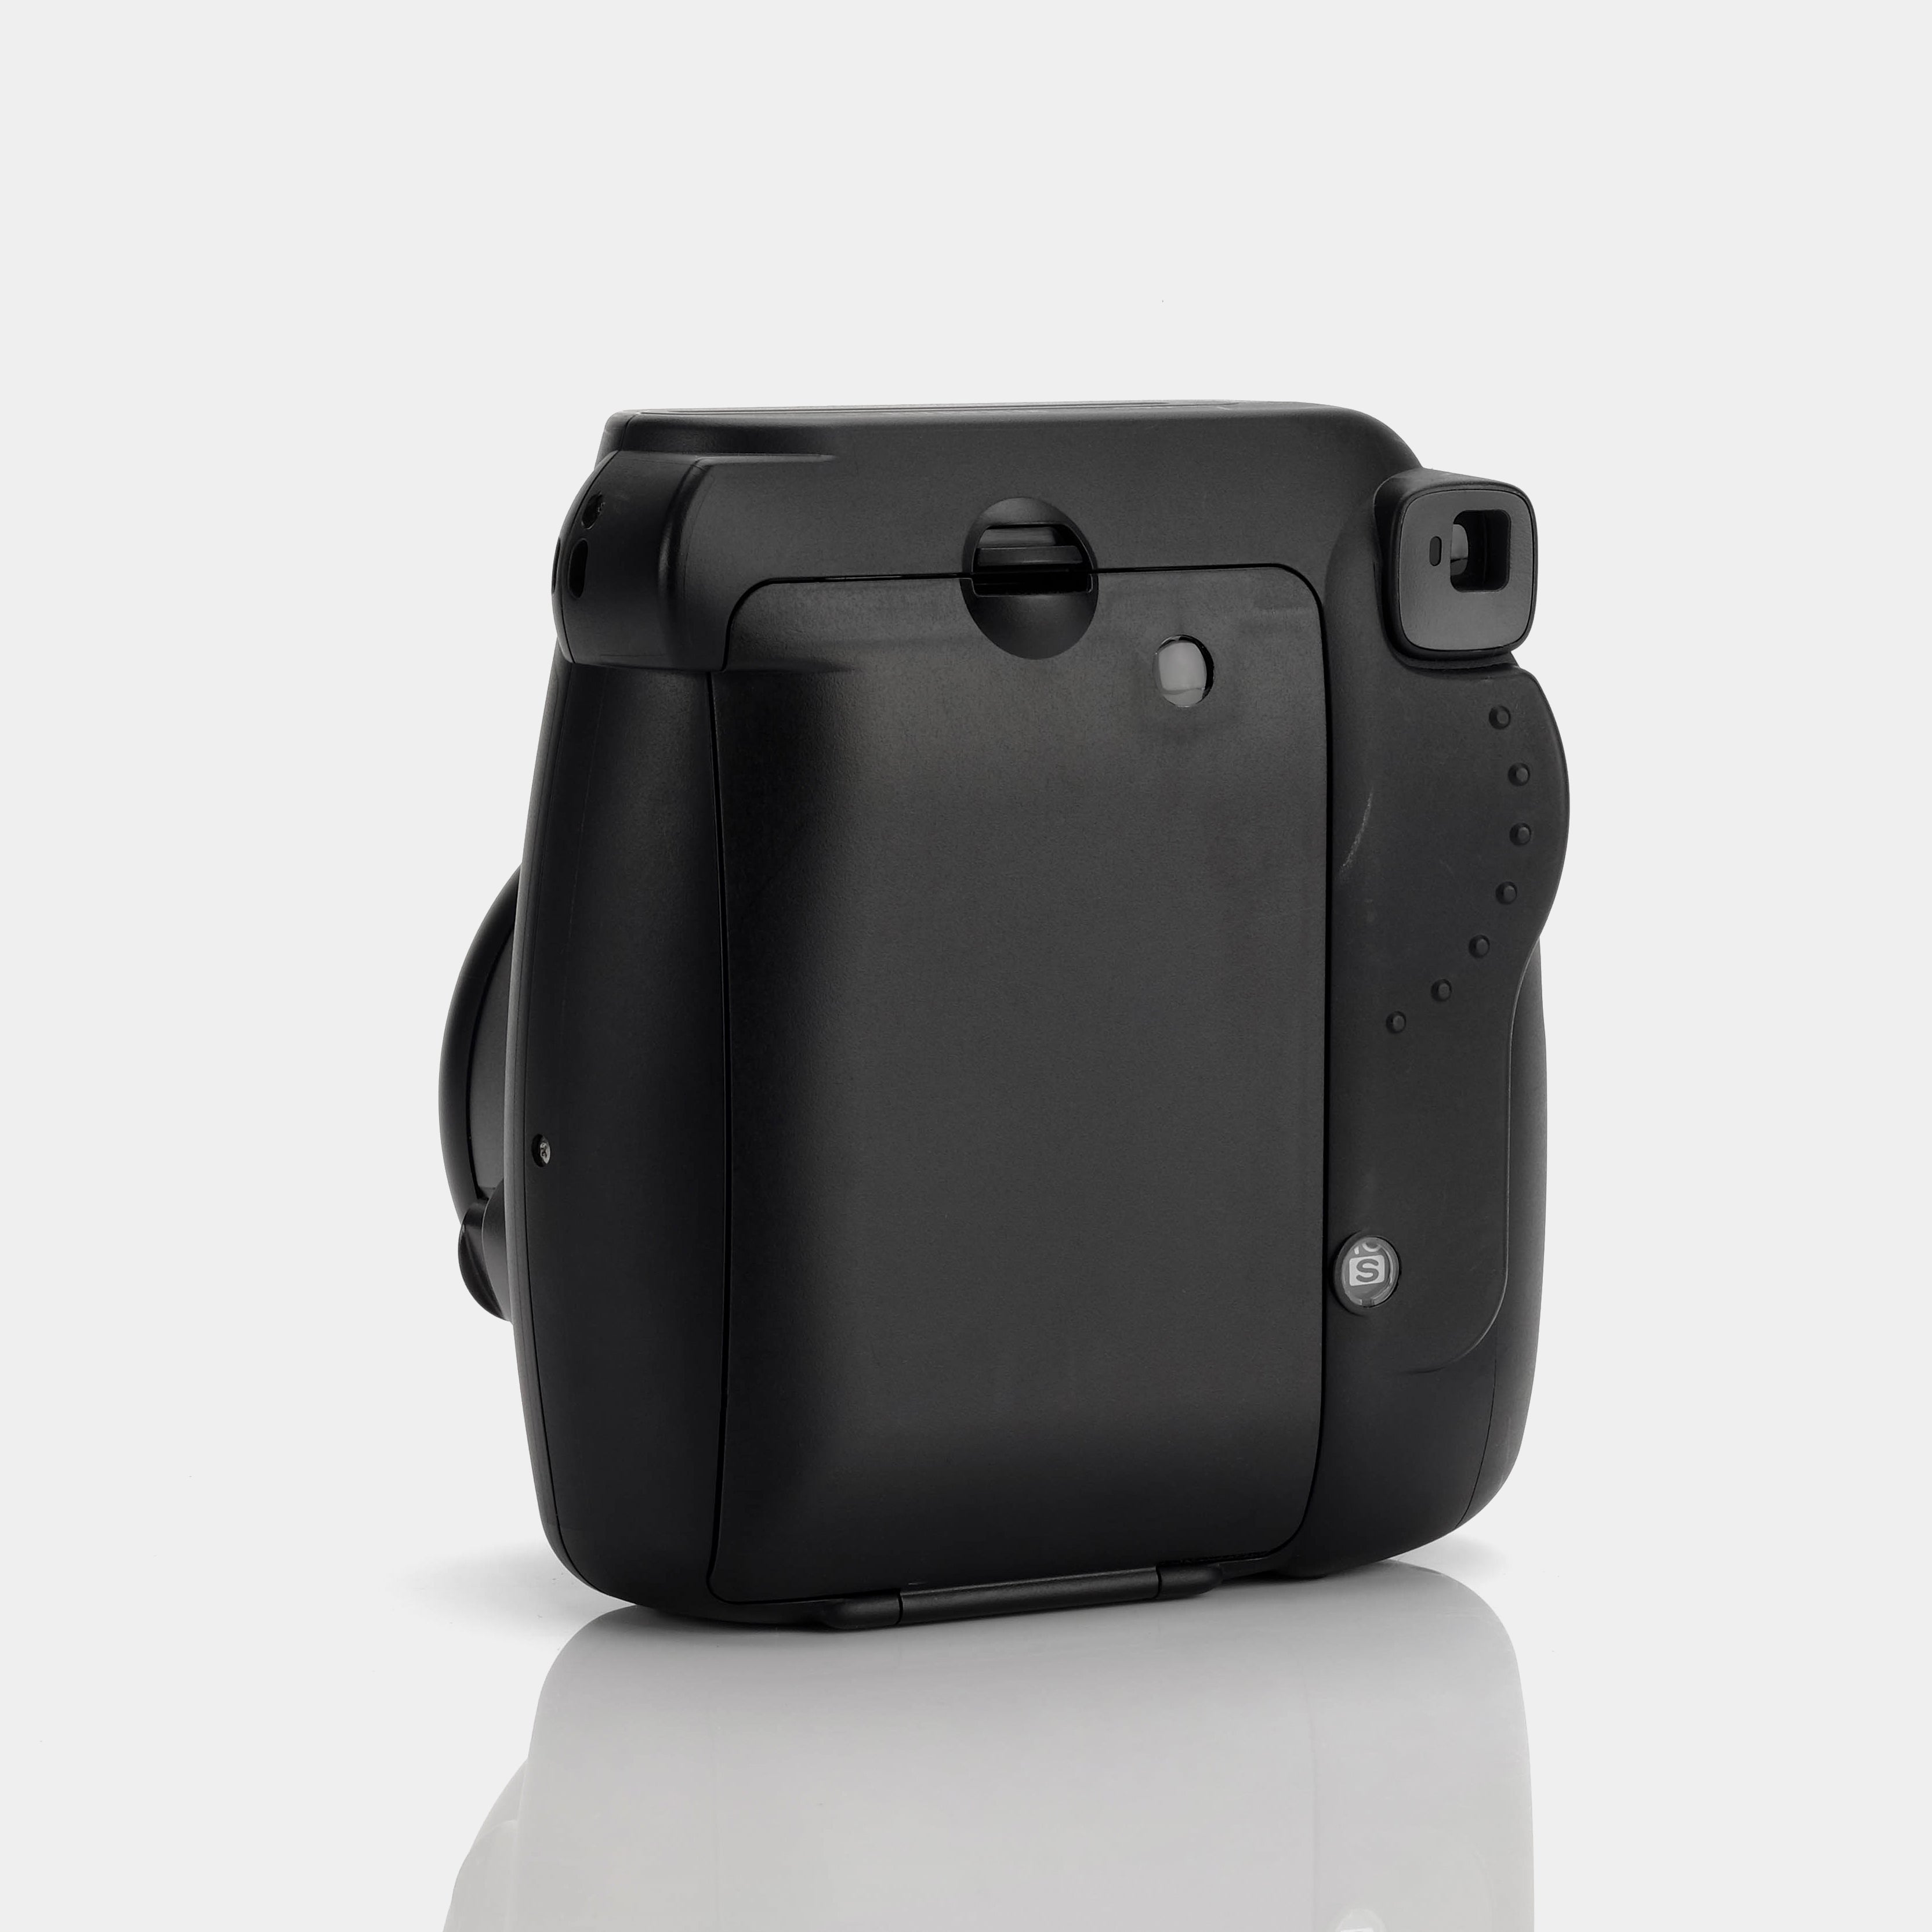 Fujifilm Instax Mini 8 Black Instant Film Camera - Refurbished